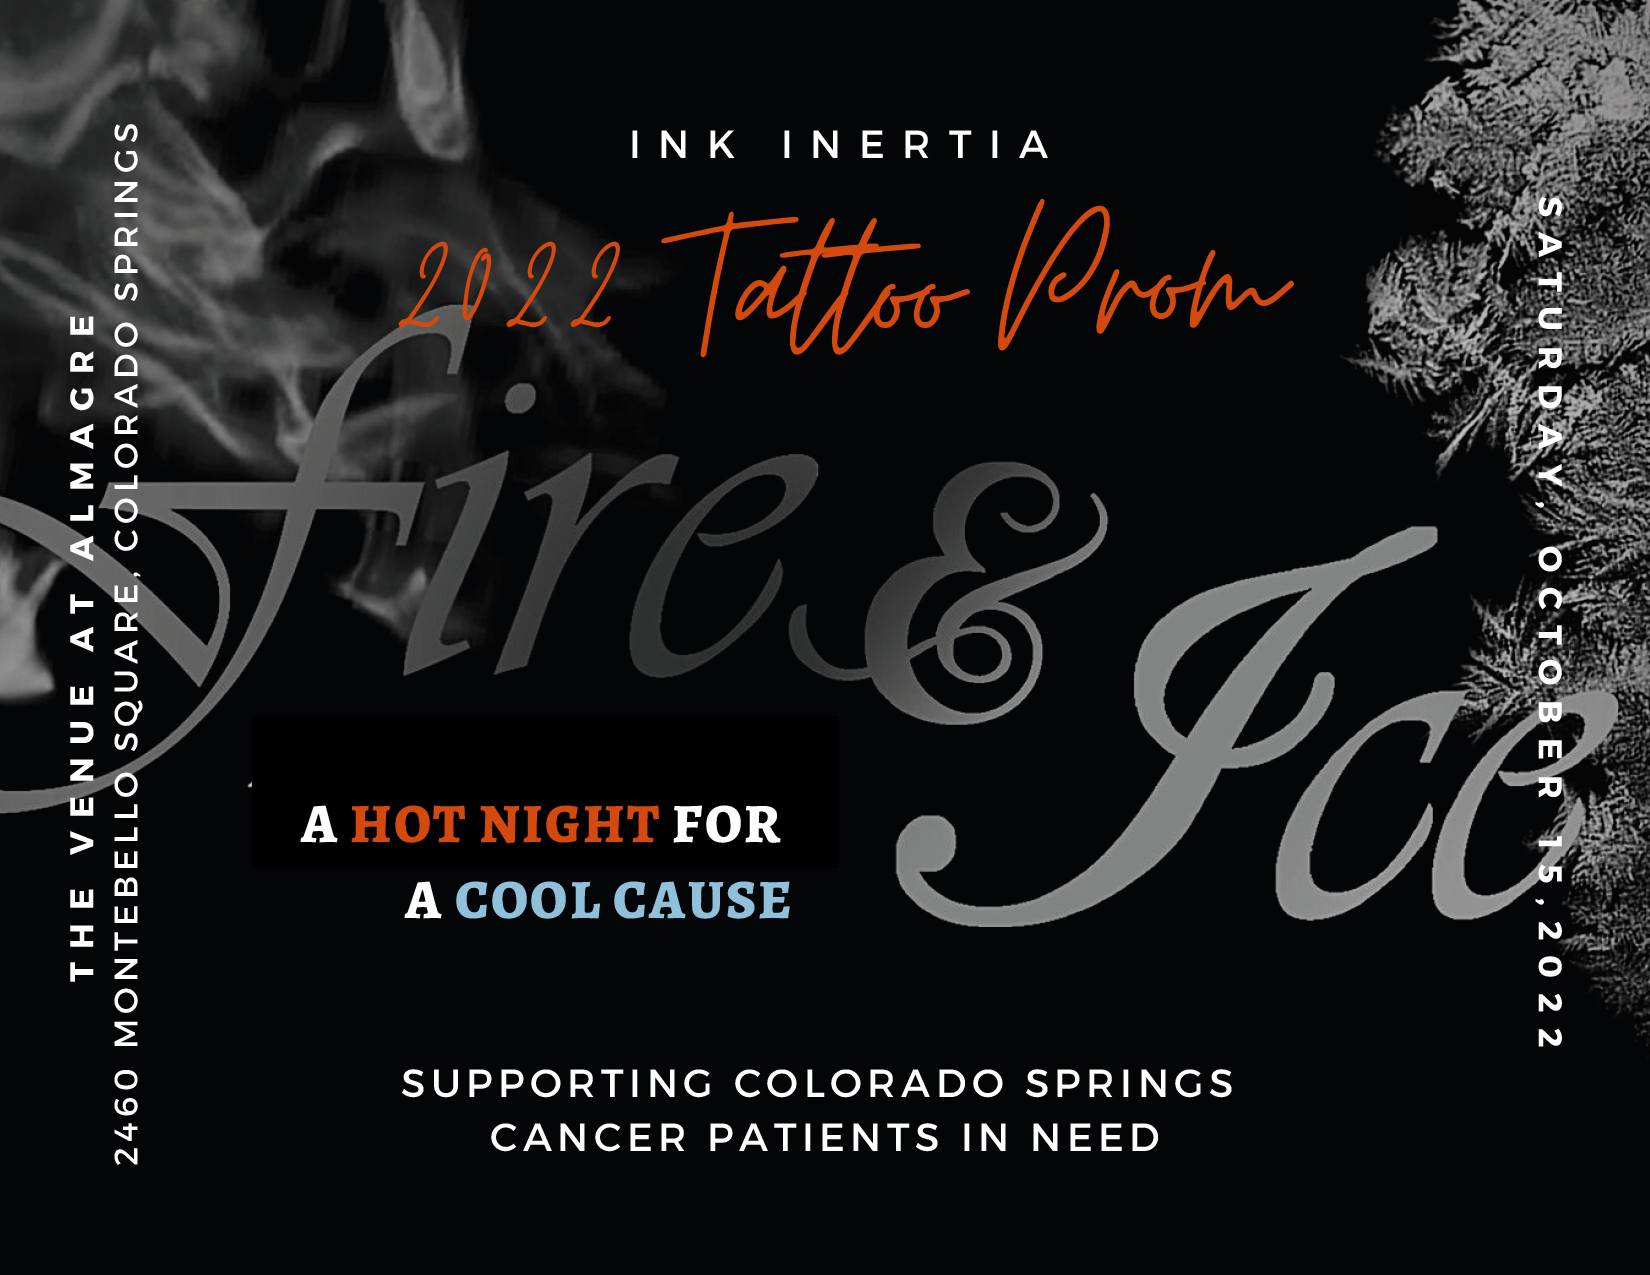 Ink Inertia Custom Tattoo and Art Gallery, Colorado Springs, CO - Reviews (97), Photos (33) - BestProsInTown